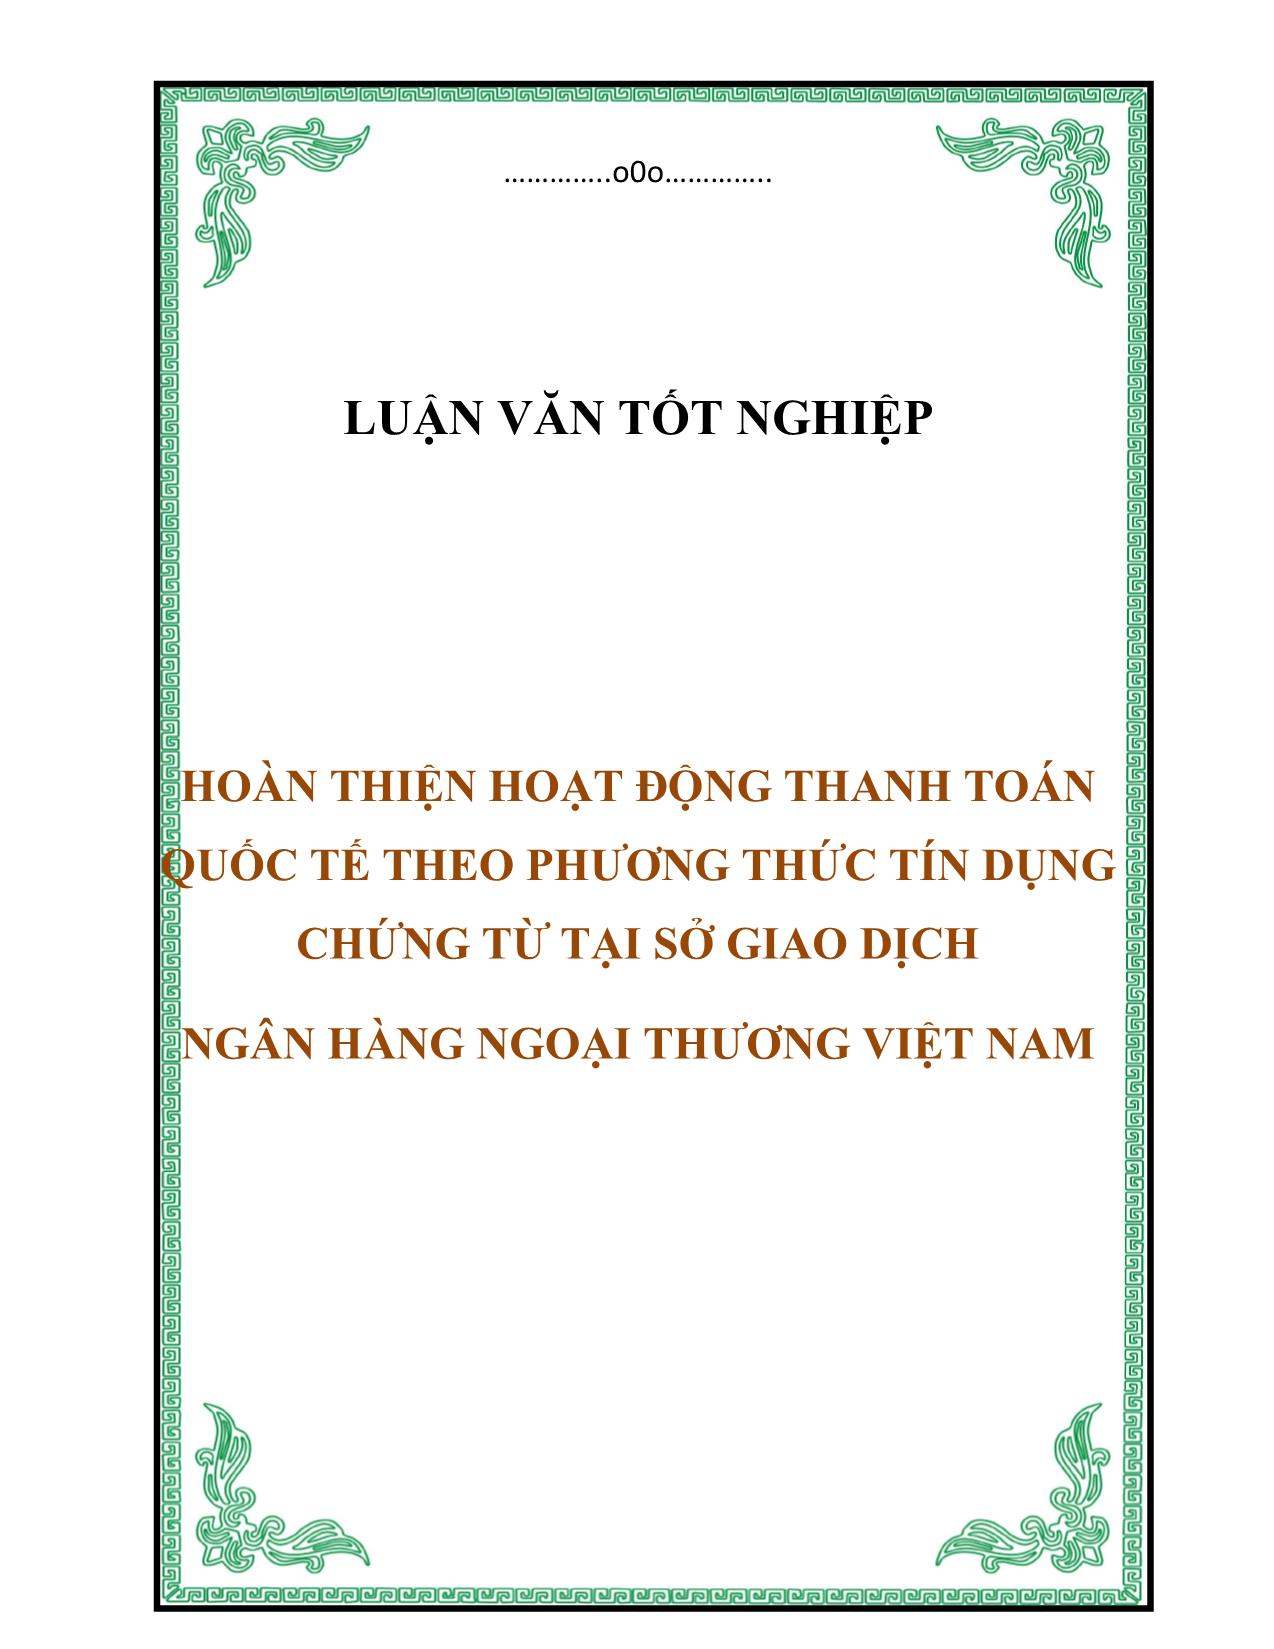 Luận văn Hoàn thiện hoạt động thanh toán quốc tế theo phương thức tín dụng chứng từ tại sở giao dịch ngân hàng ngoại thương Việt Nam trang 1